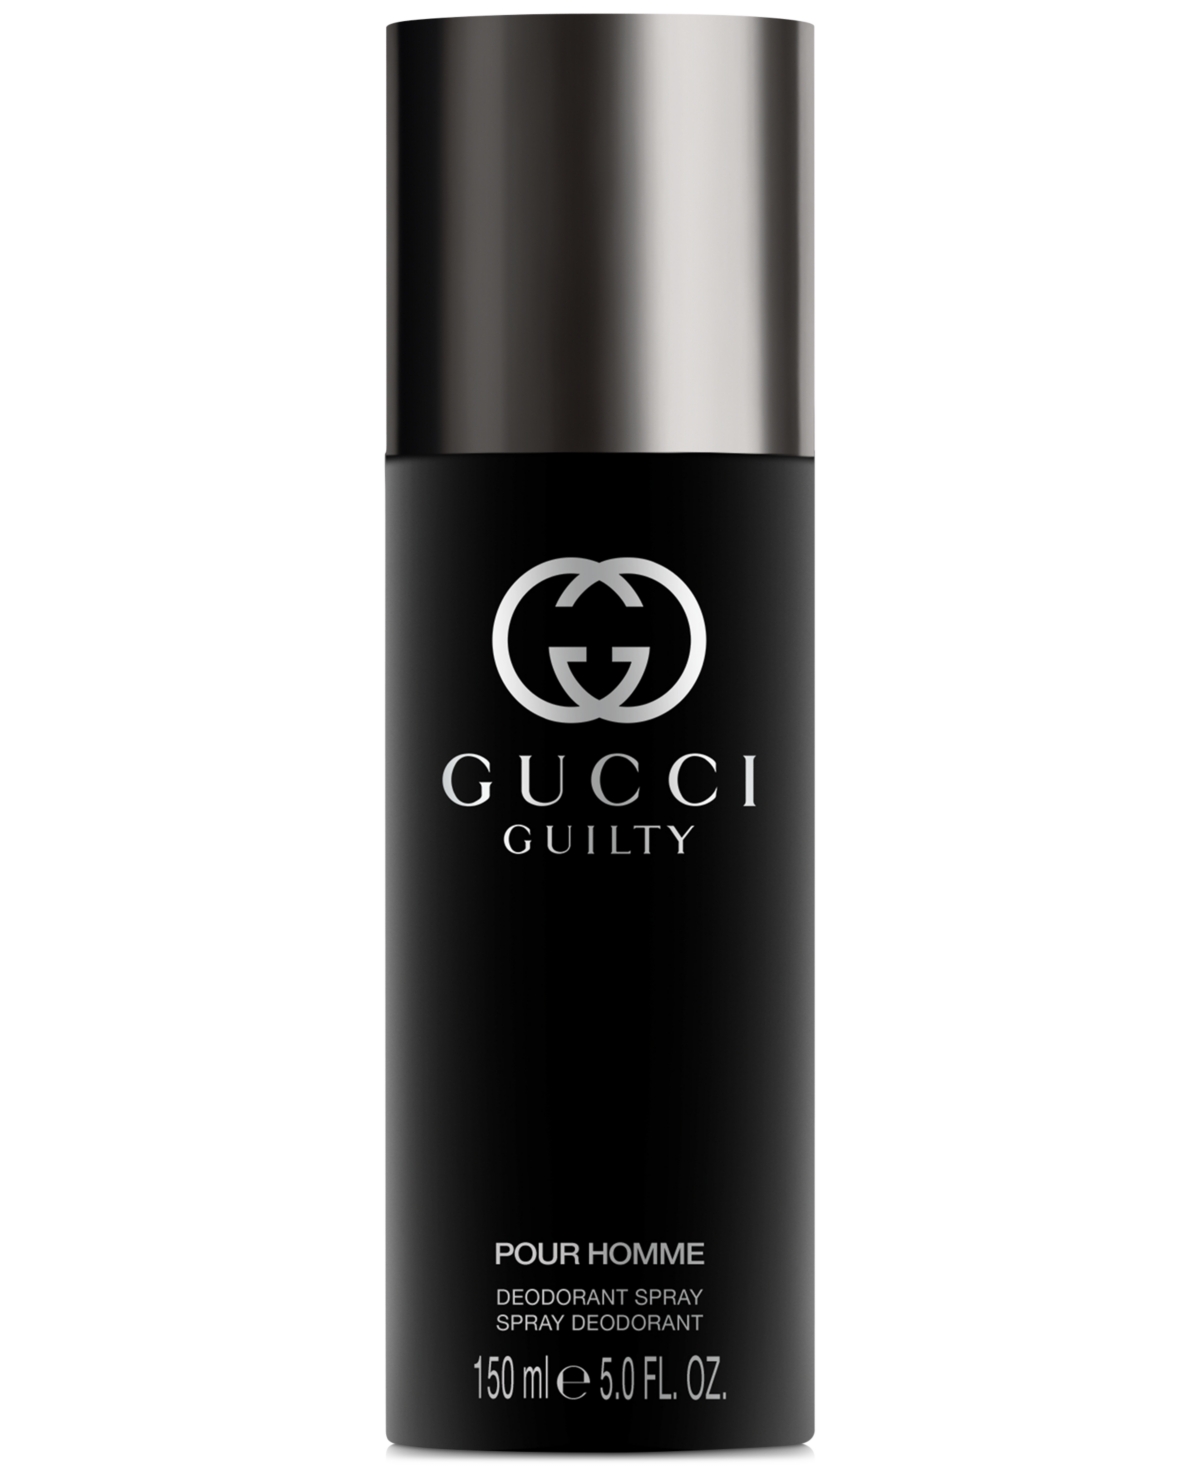 Gucci Guilty Men's Deodorant Spray, 5 Oz.